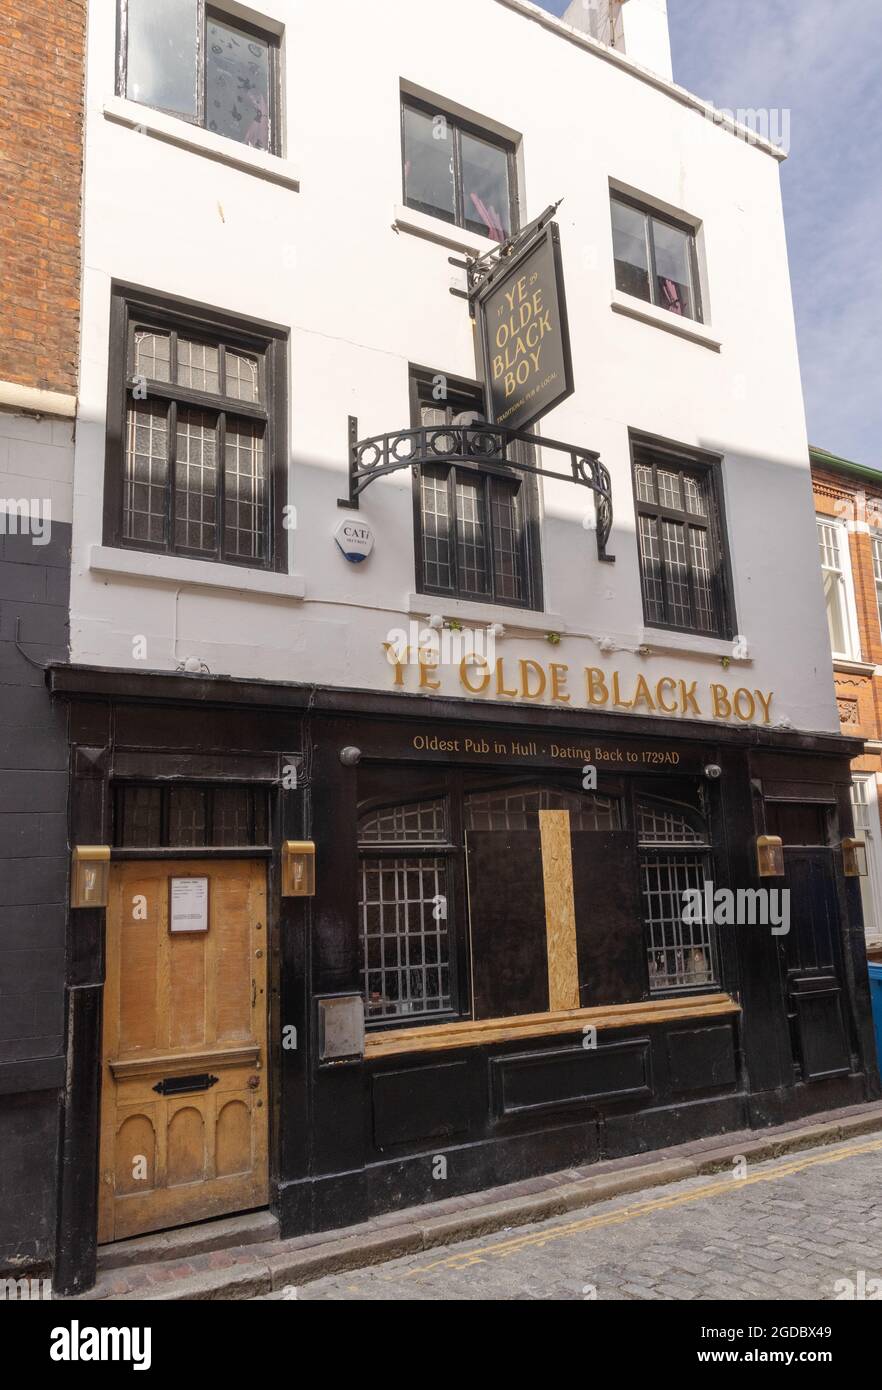 YE Olde Black Boy pub, Hull, Yorkshire Regno Unito. Il pub più antico di Hull, fondato nel 1729. Esempio di pub inglesi del 128o secolo Foto Stock